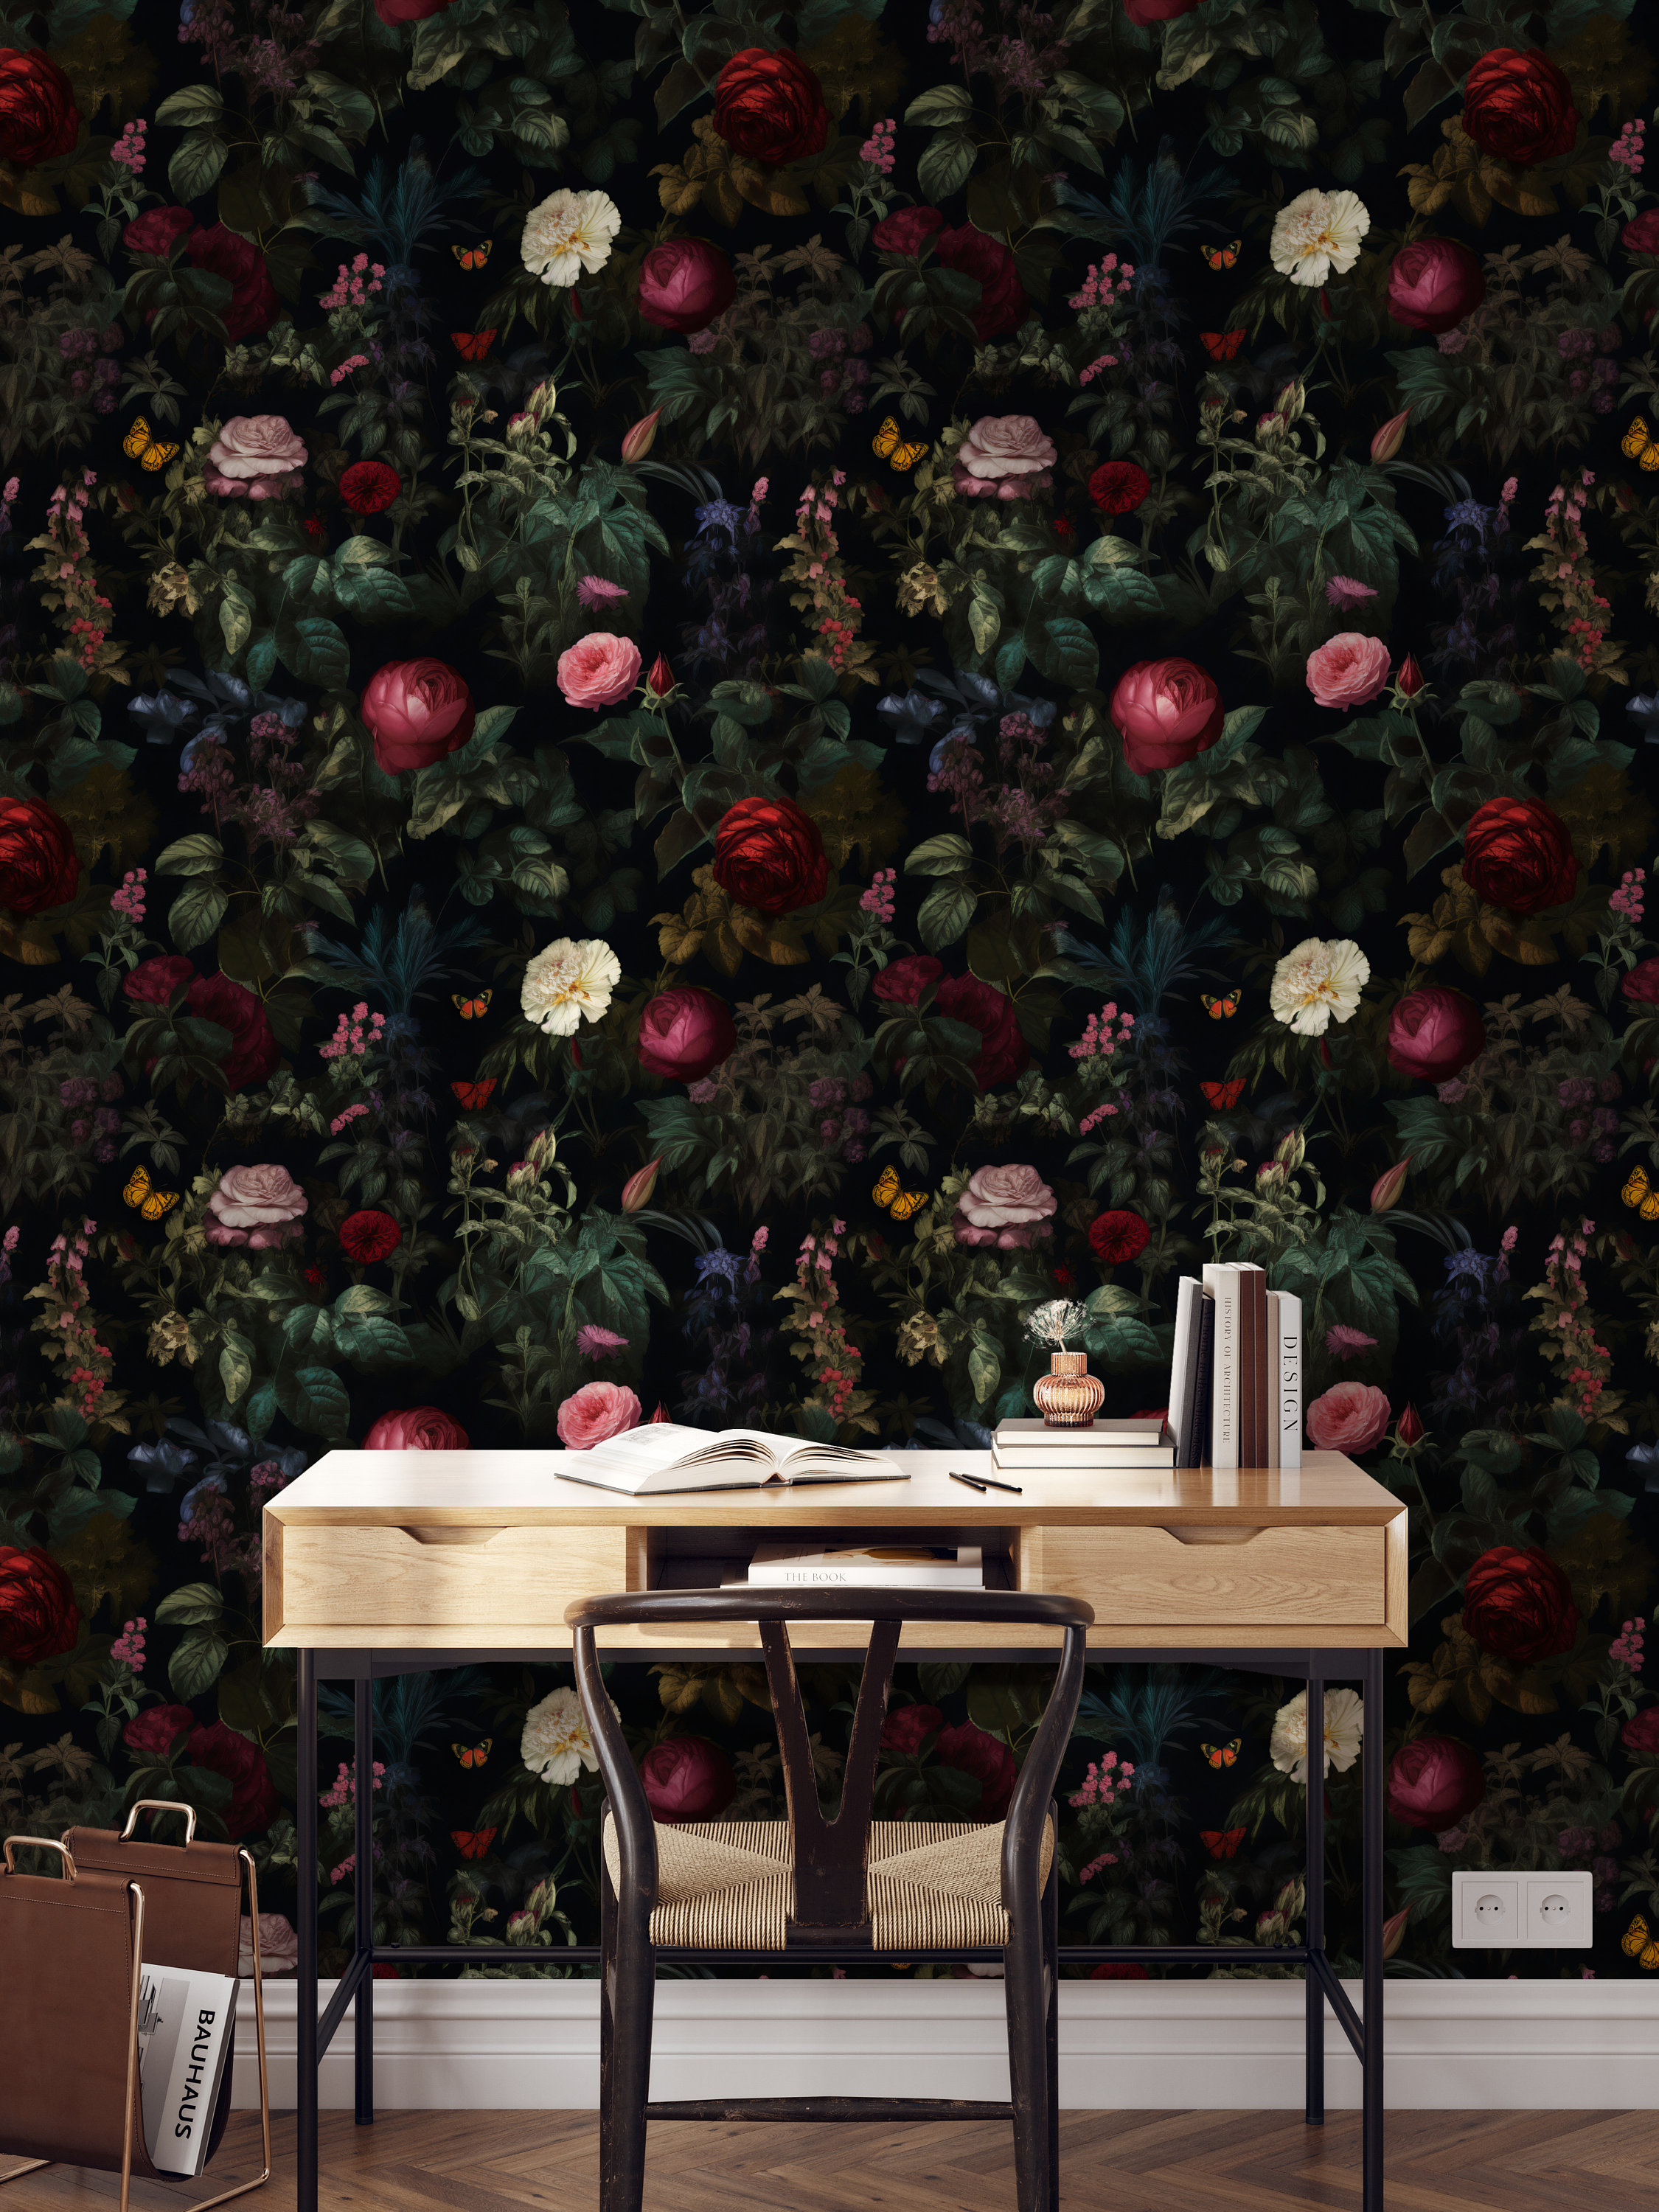 Angelus Leather Paint Honest Review + DIY Florals